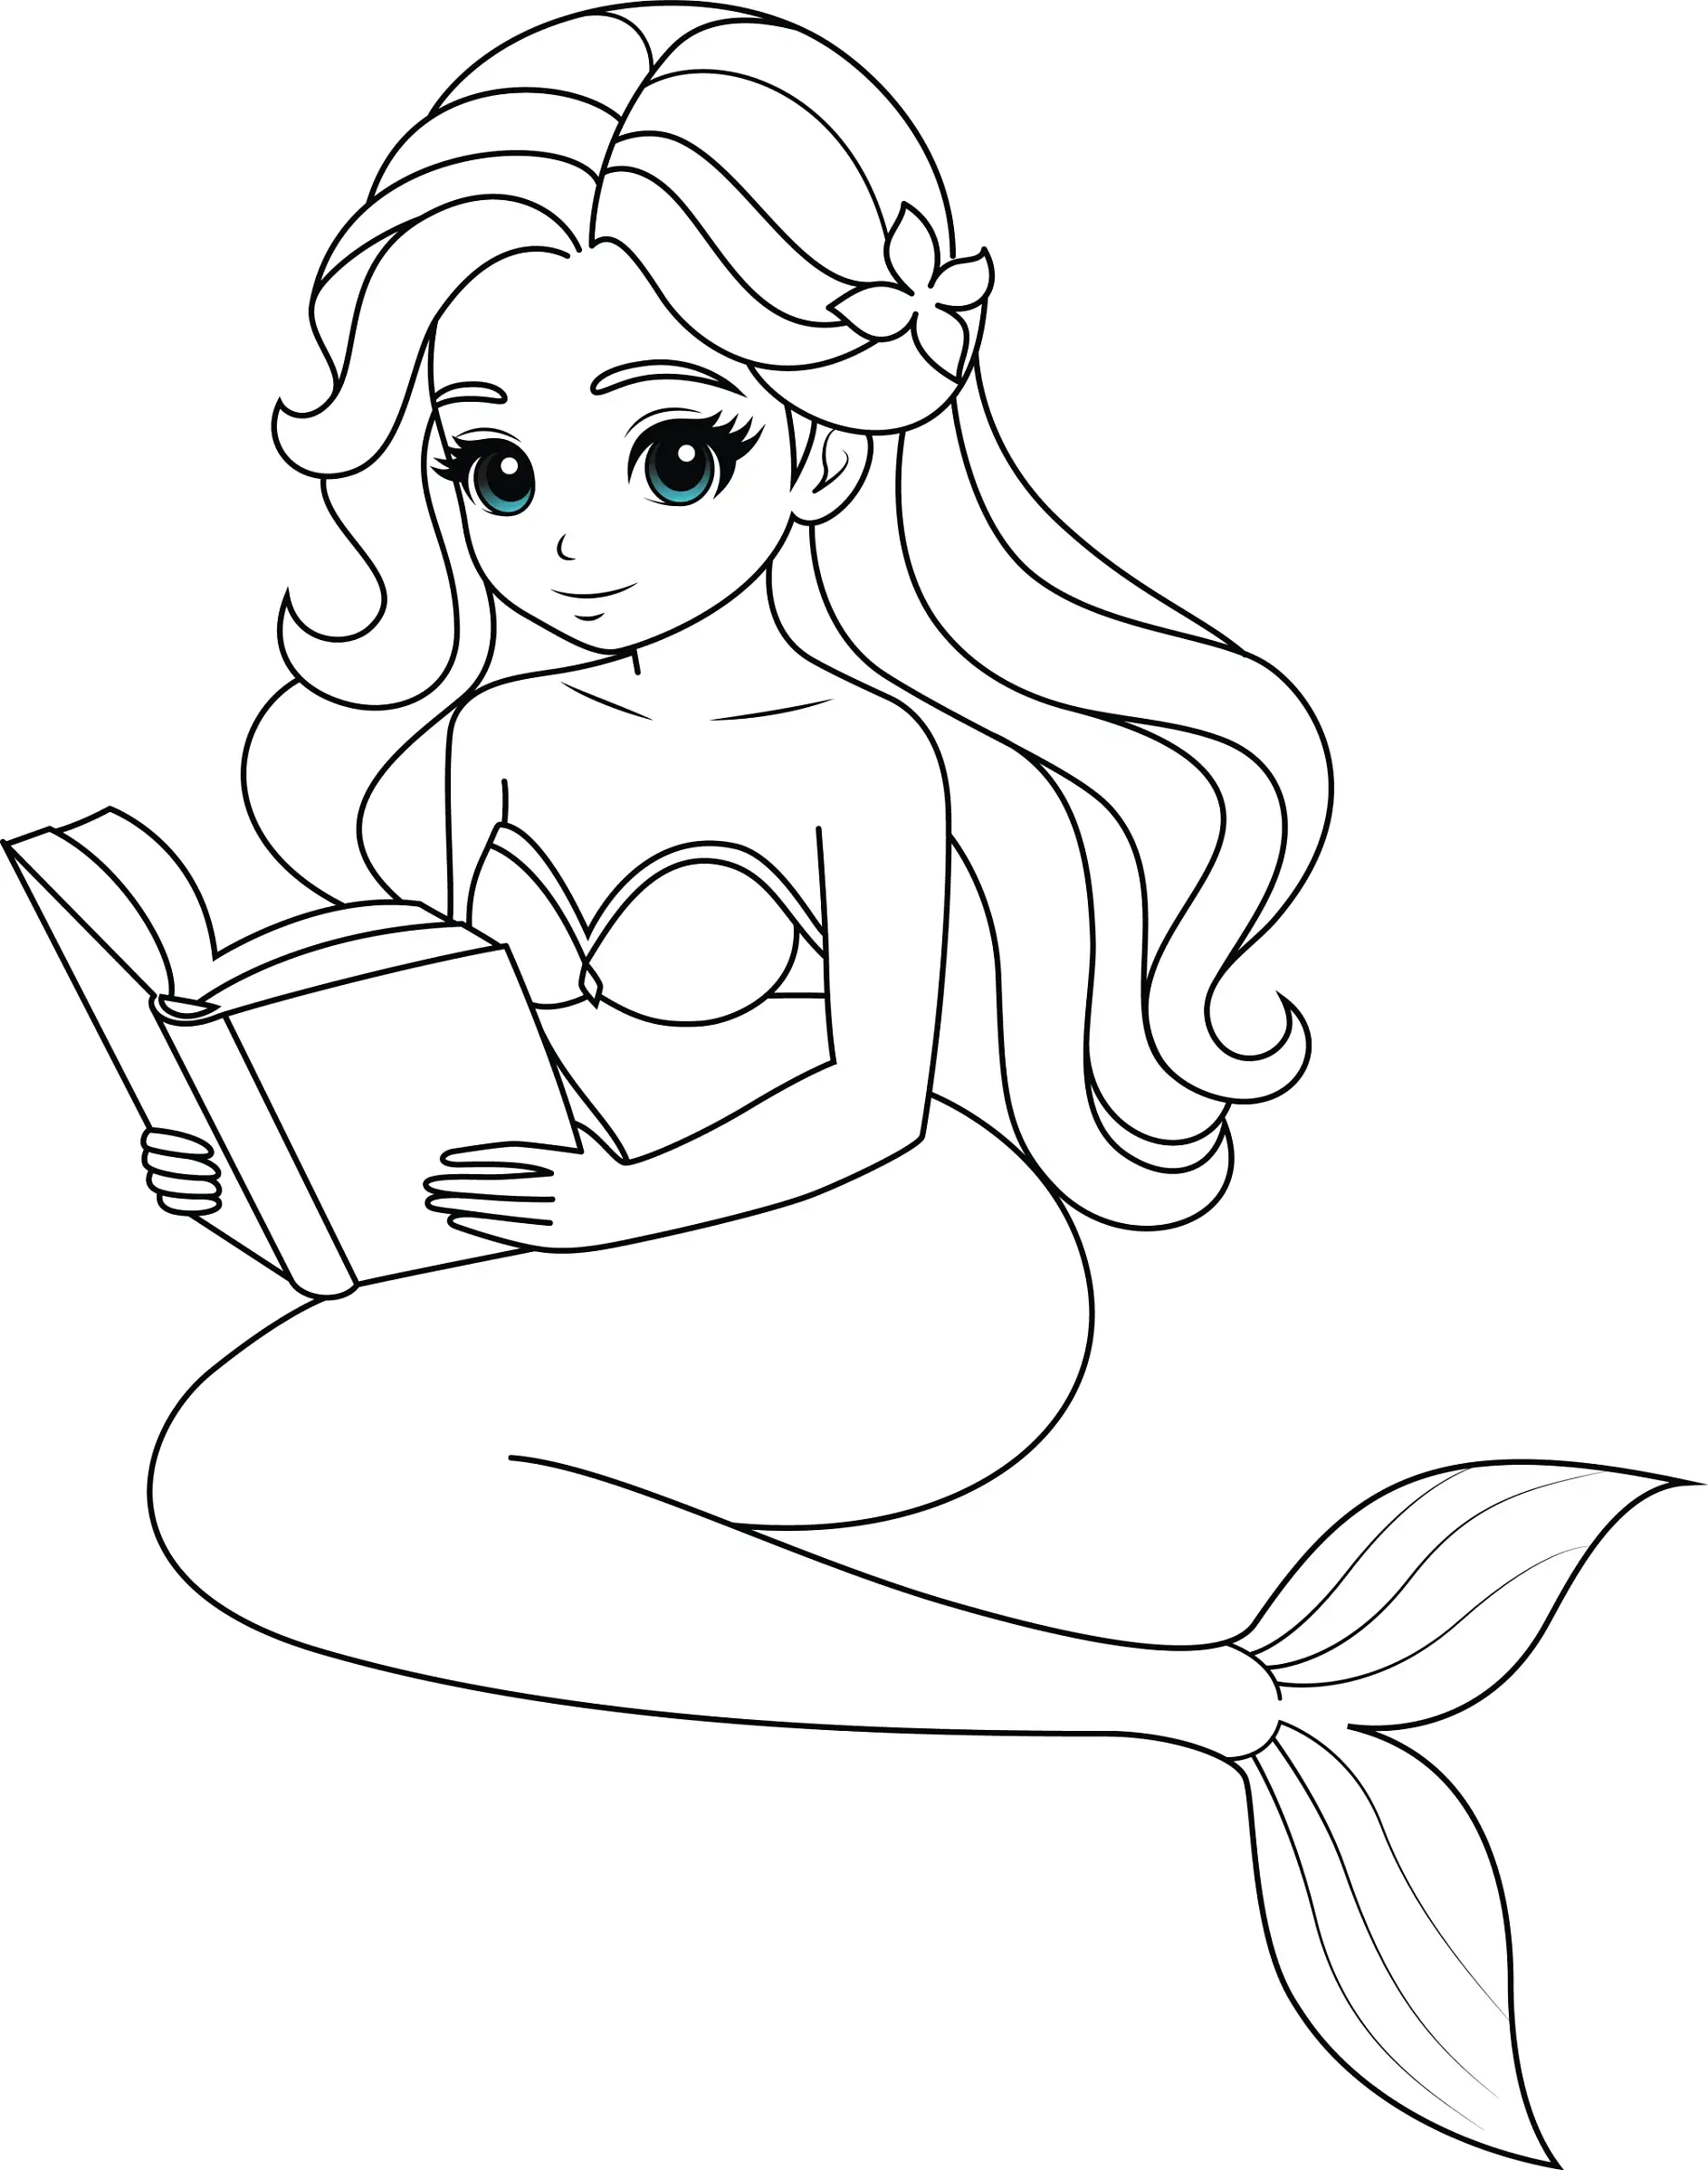 Ausmalbild Meerjungfrau liest ein Buch mit Blumen im Haar